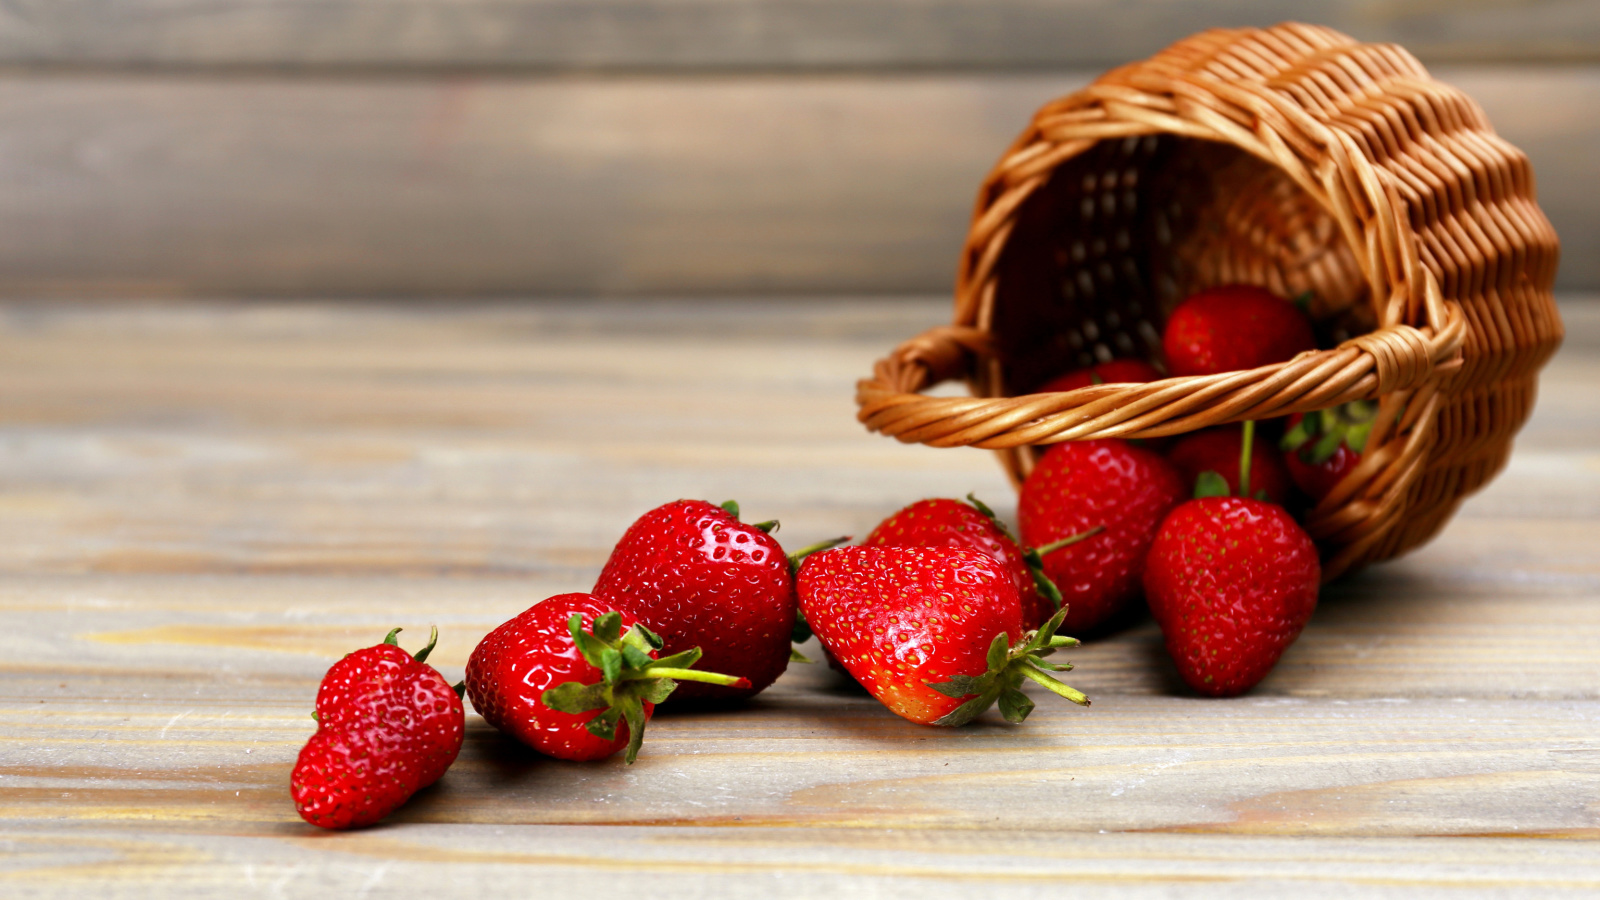 Обои Strawberry Fresh Berries 1600x900